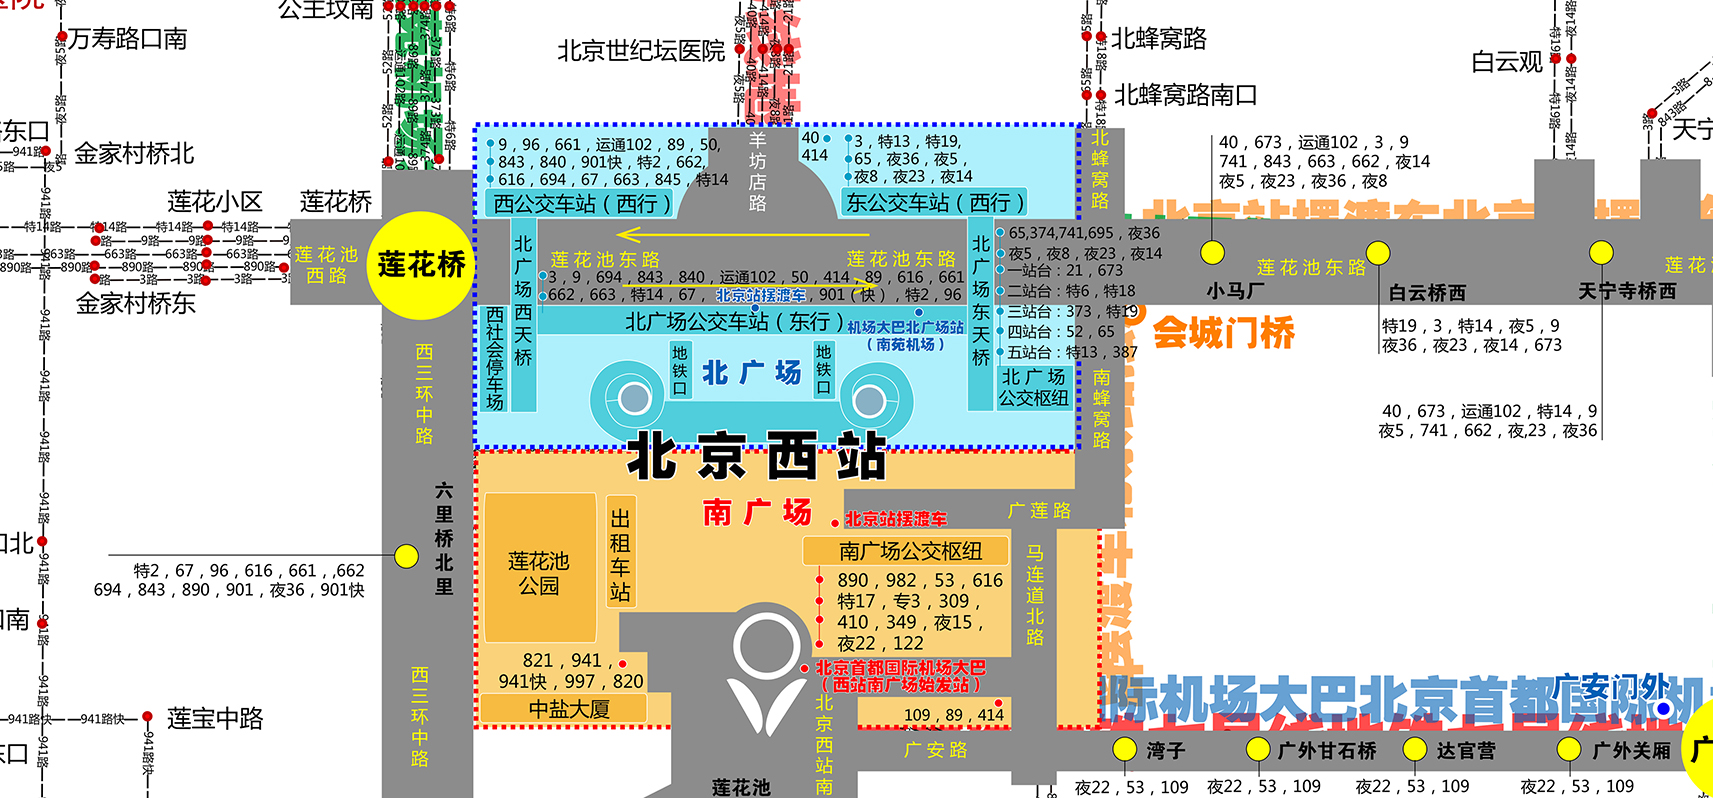 北京西站详细图解图片